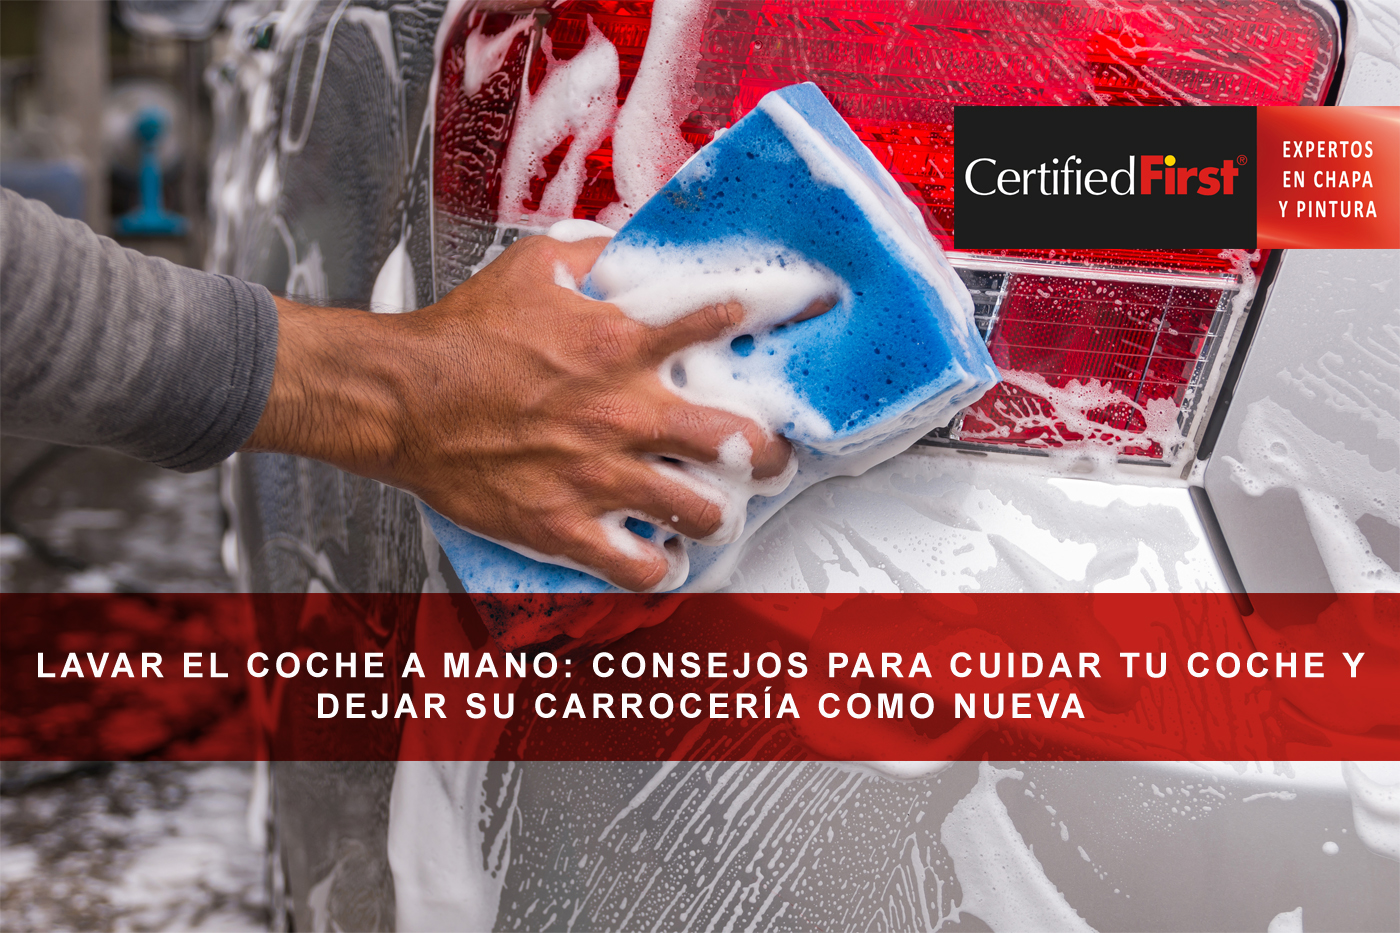 Lavar el coche a mano: consejos para cuidar tu coche y dejar su carrocería como nueva